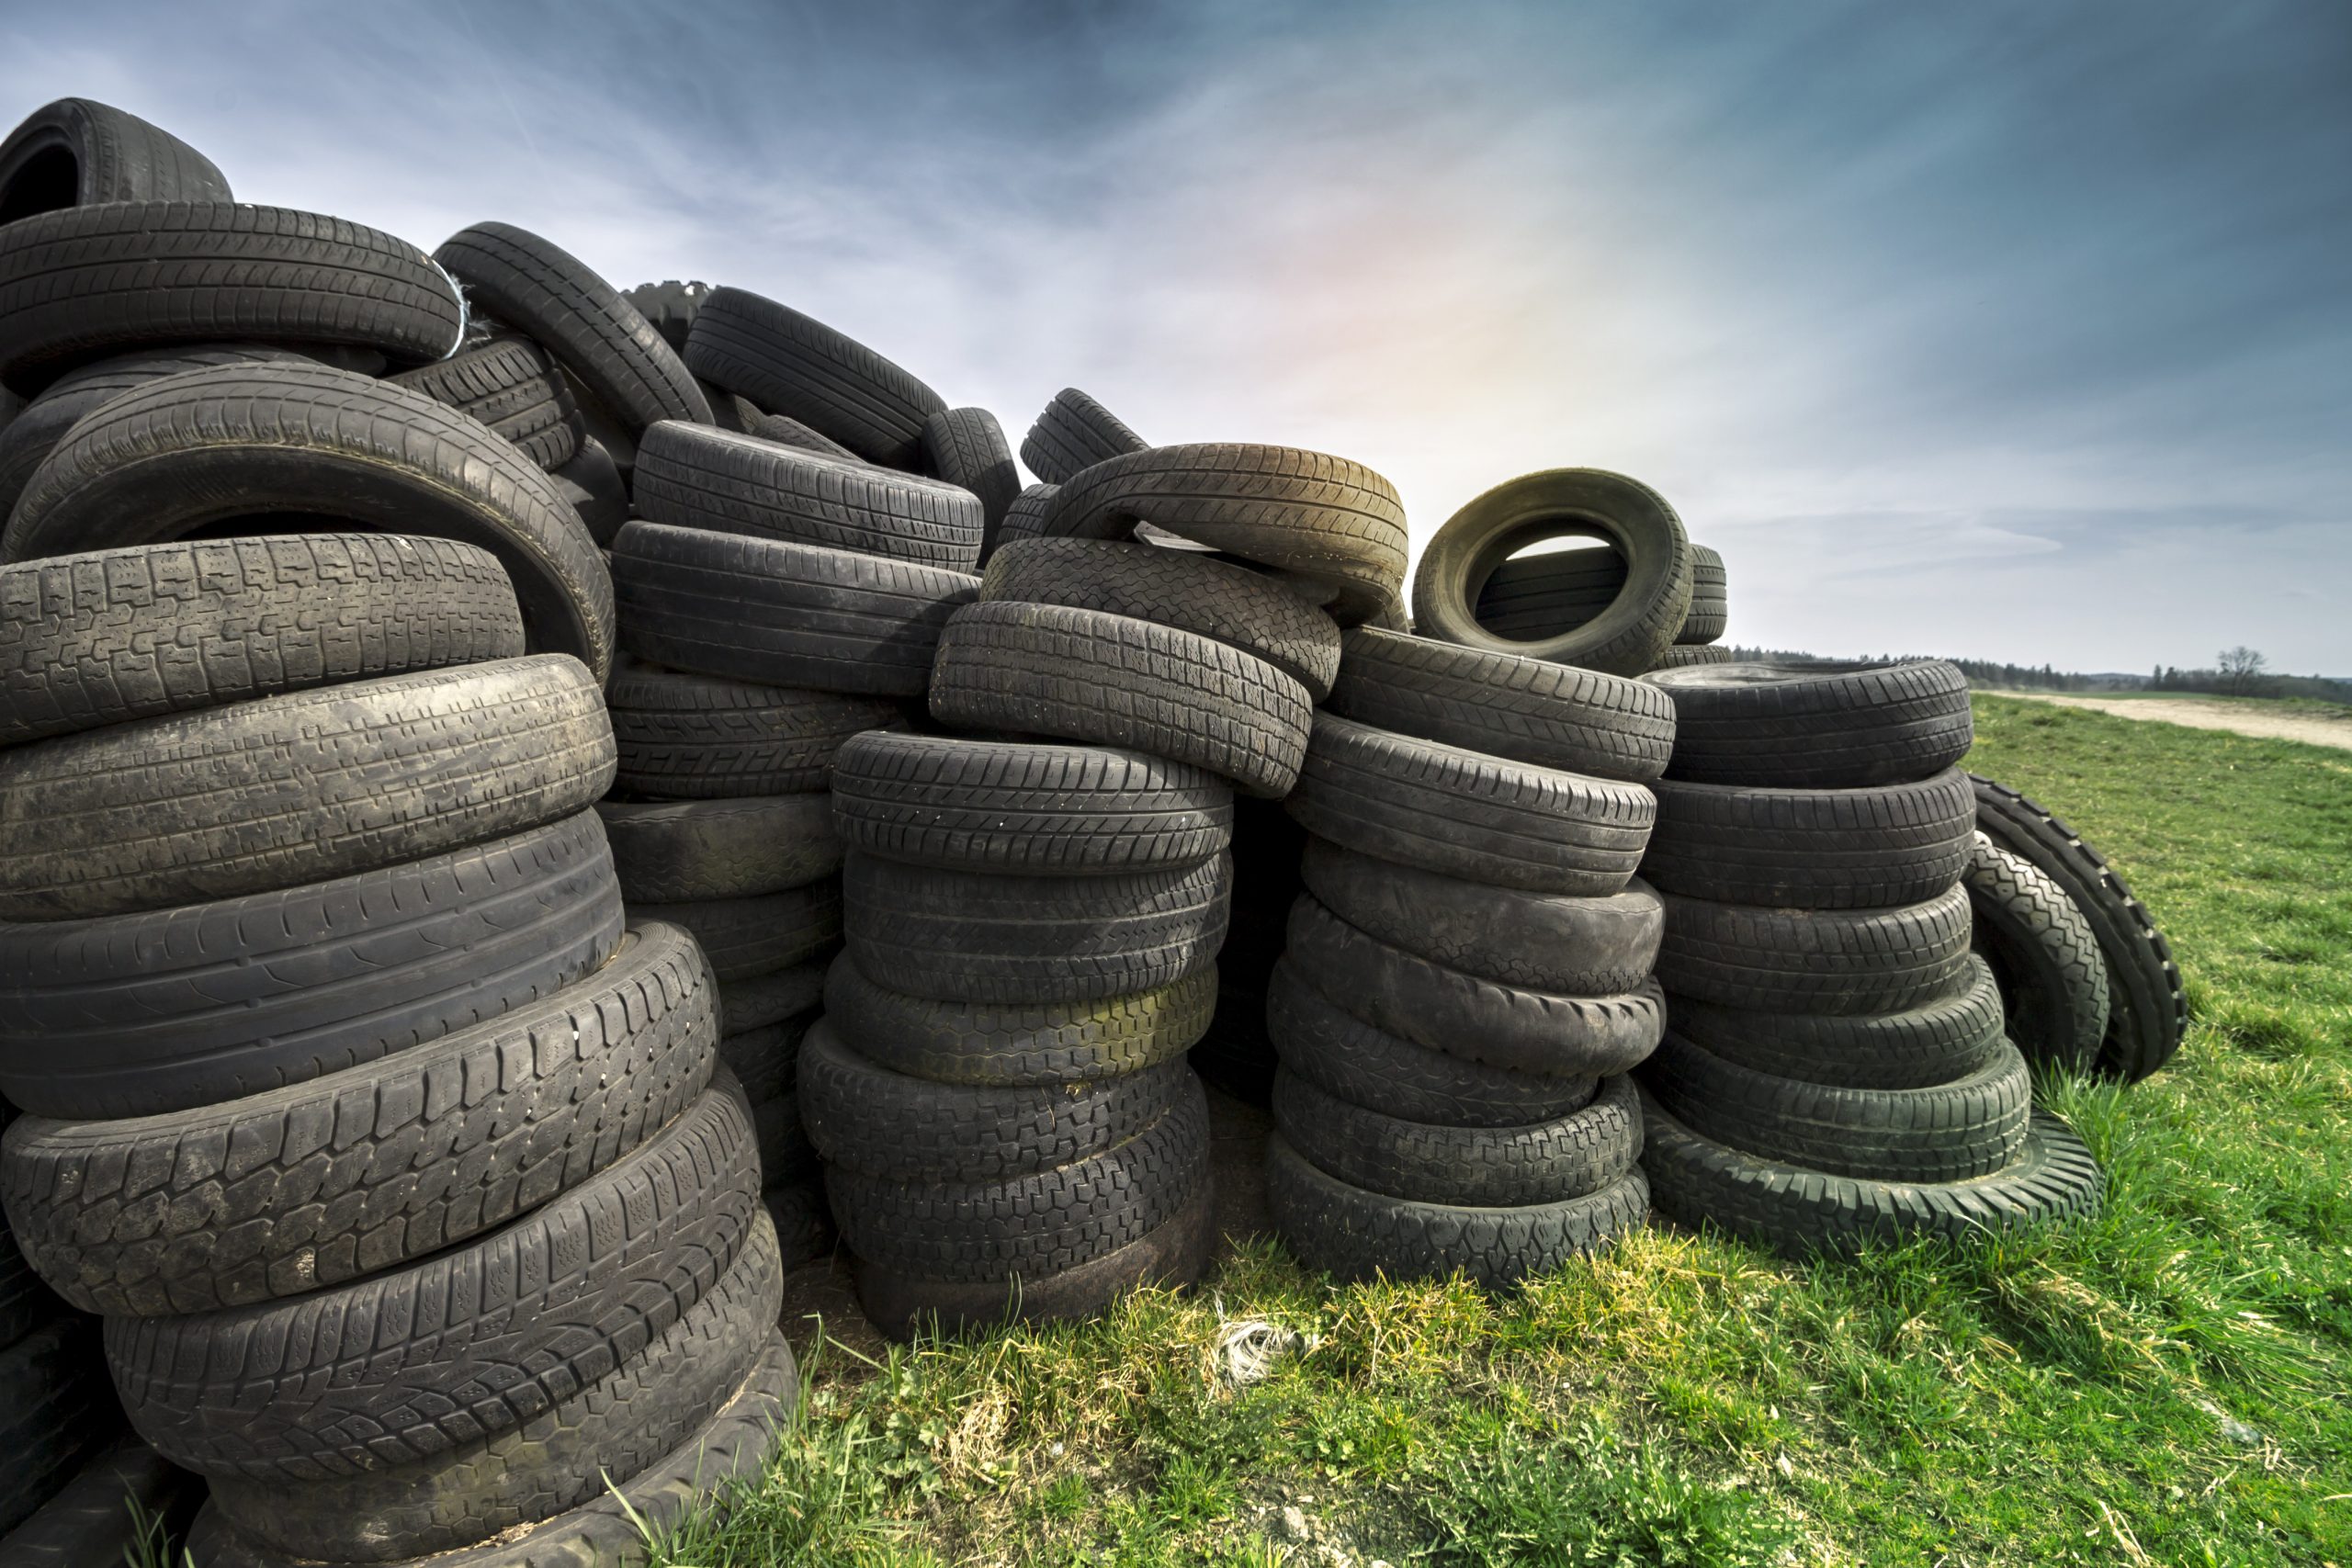 Recyclage des pneus : que faut-il en faire ?